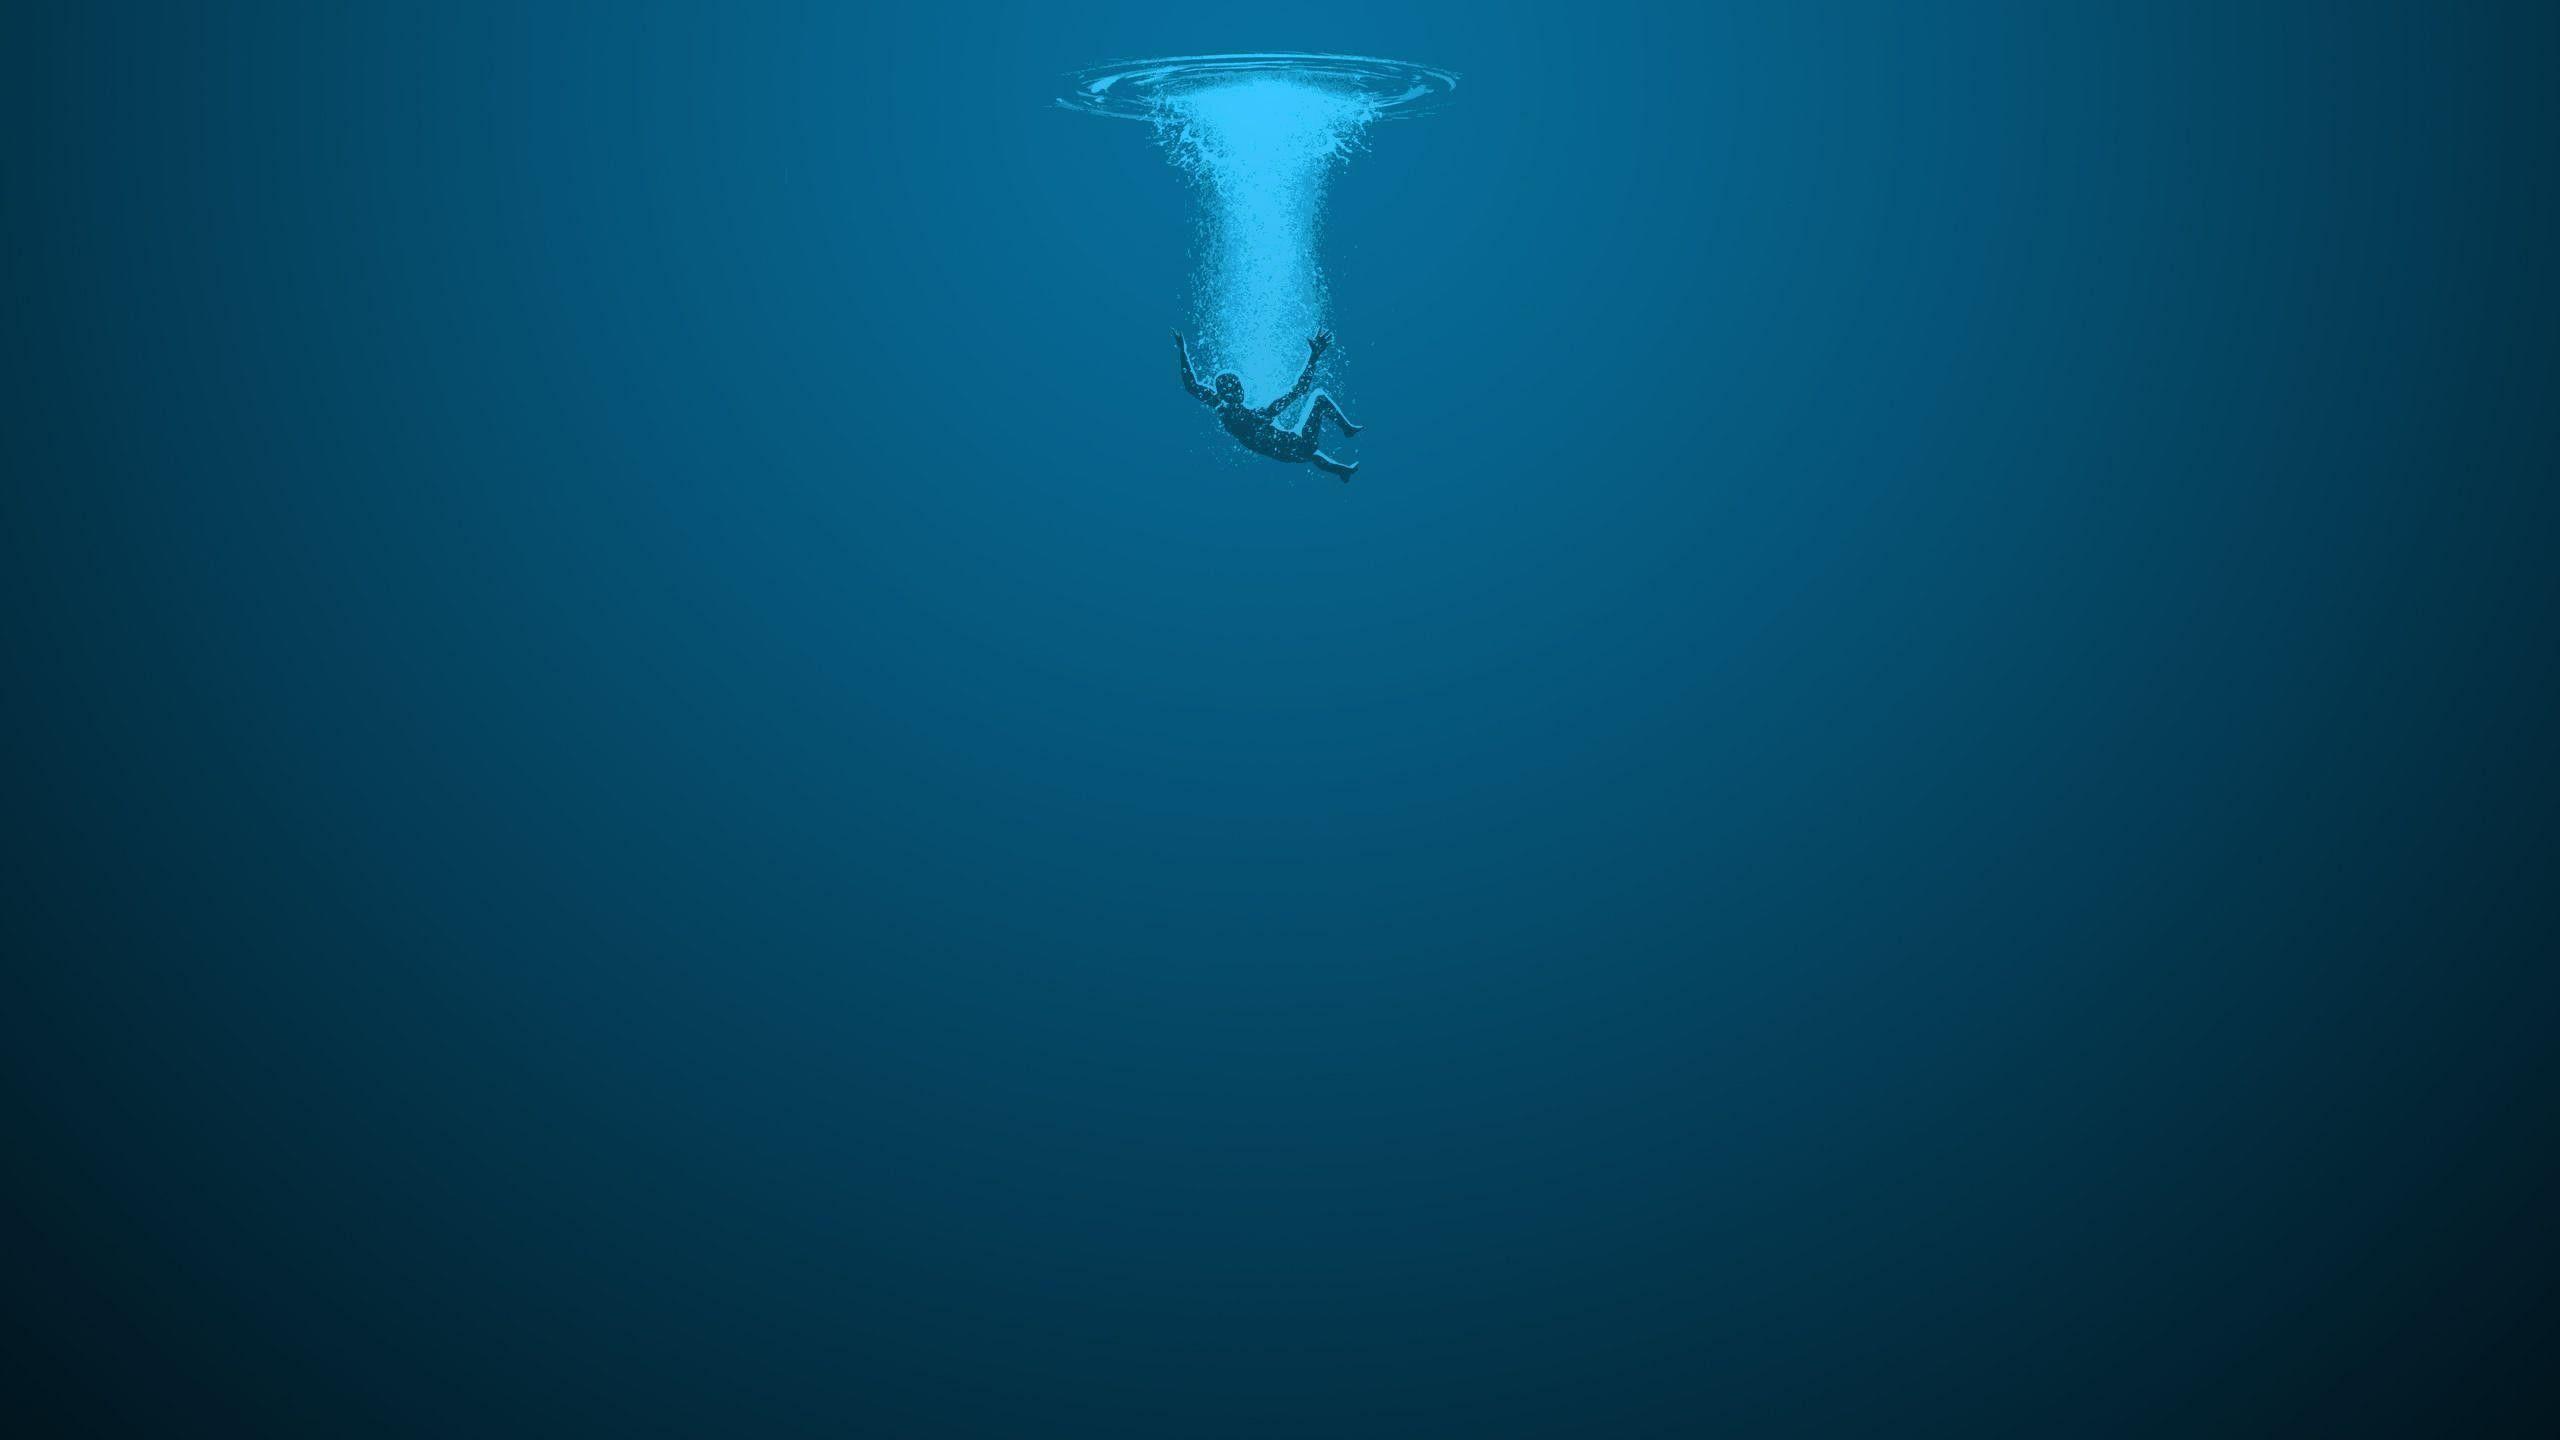 deep ocean background